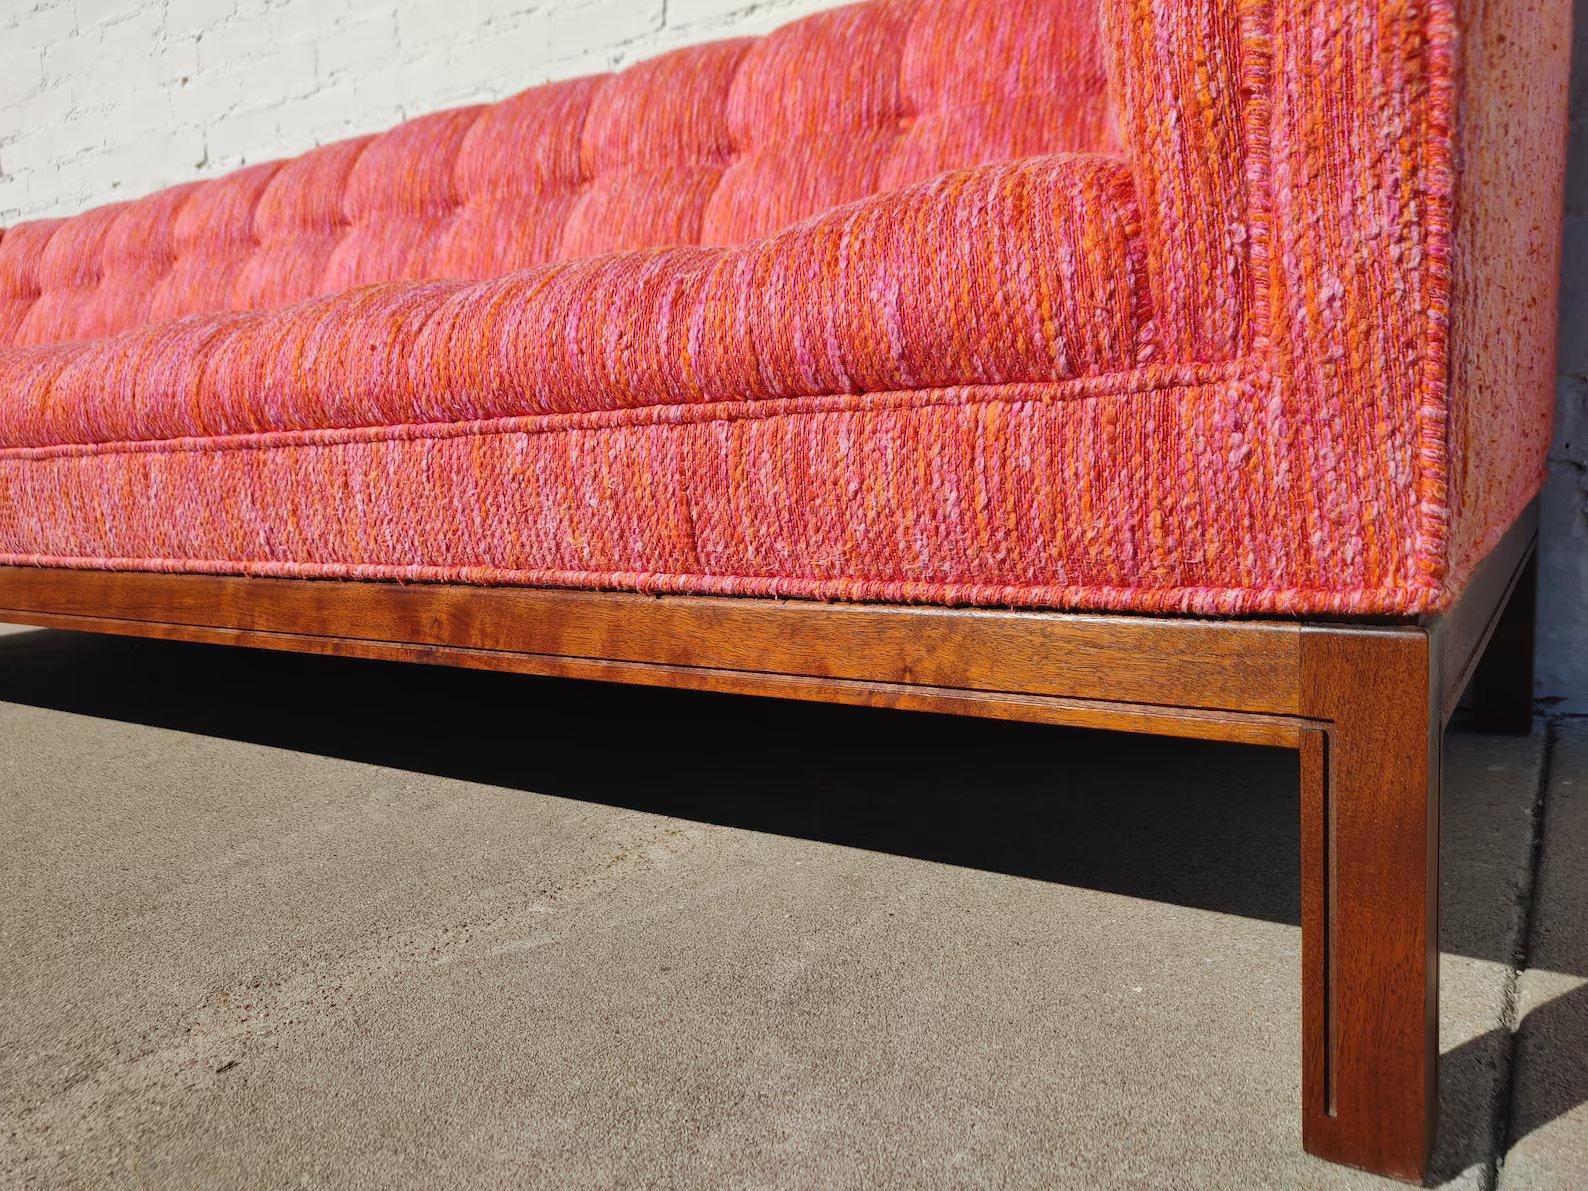 Mid Century Modern Walnuss Basis Tufted Sofa

Überdurchschnittlicher Vintage-Zustand und strukturell gesund. Polstermöbel in sehr gutem Vintage-Zustand. Sehr geringe Abnutzung, keine Risse, sehr geringe Verschmutzung. Der Sockel aus Nussbaumholz hat